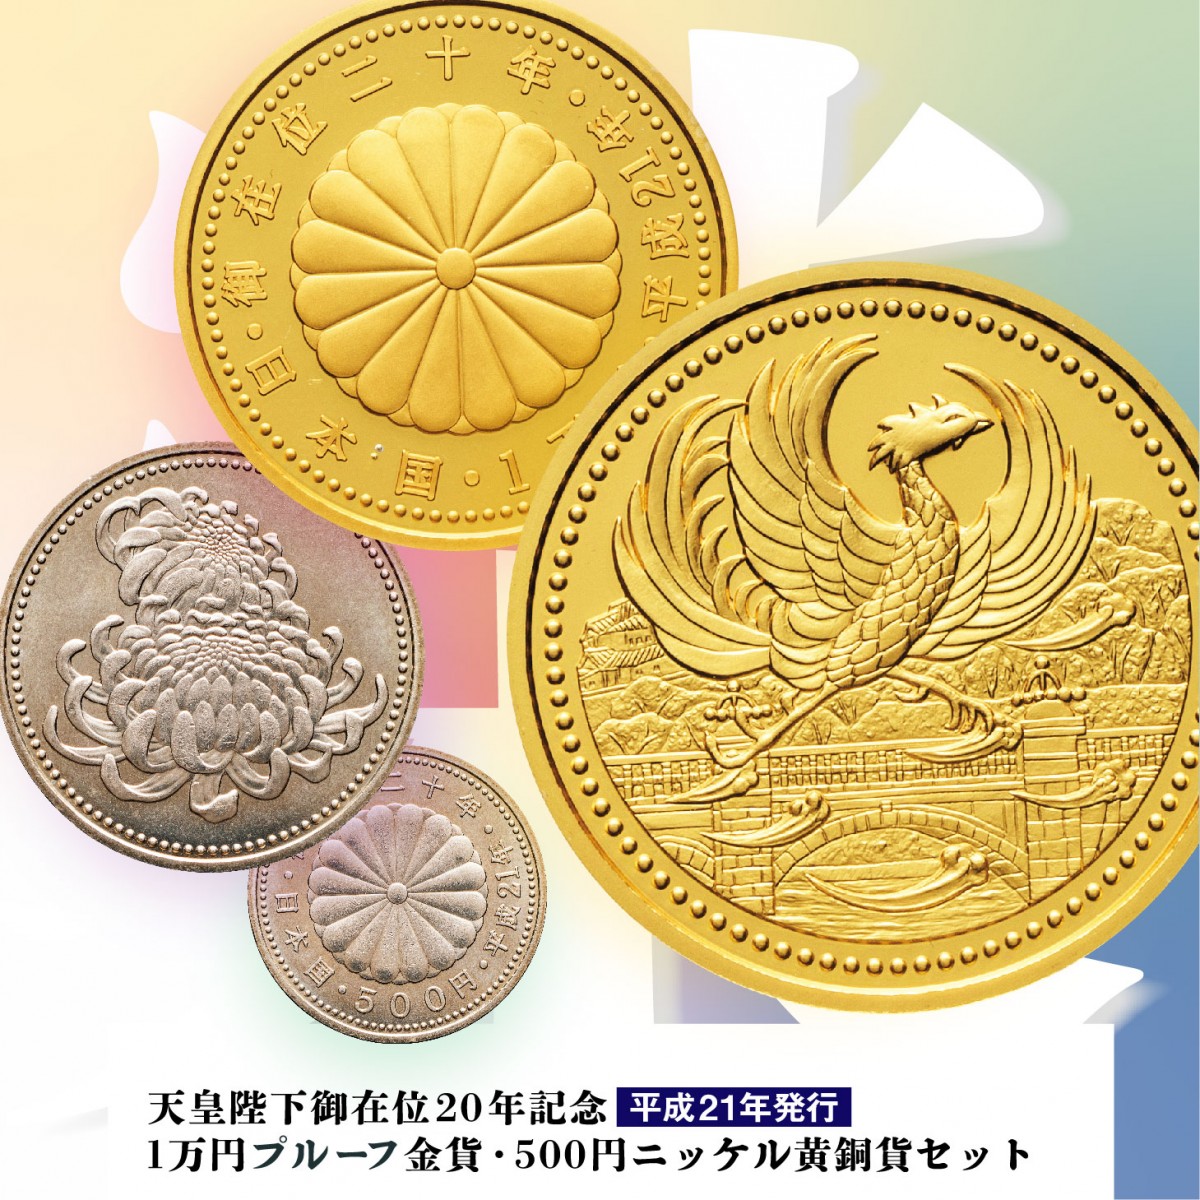 天皇陛下御在位20年記念500円プルーフニッケル黄銅貨幣